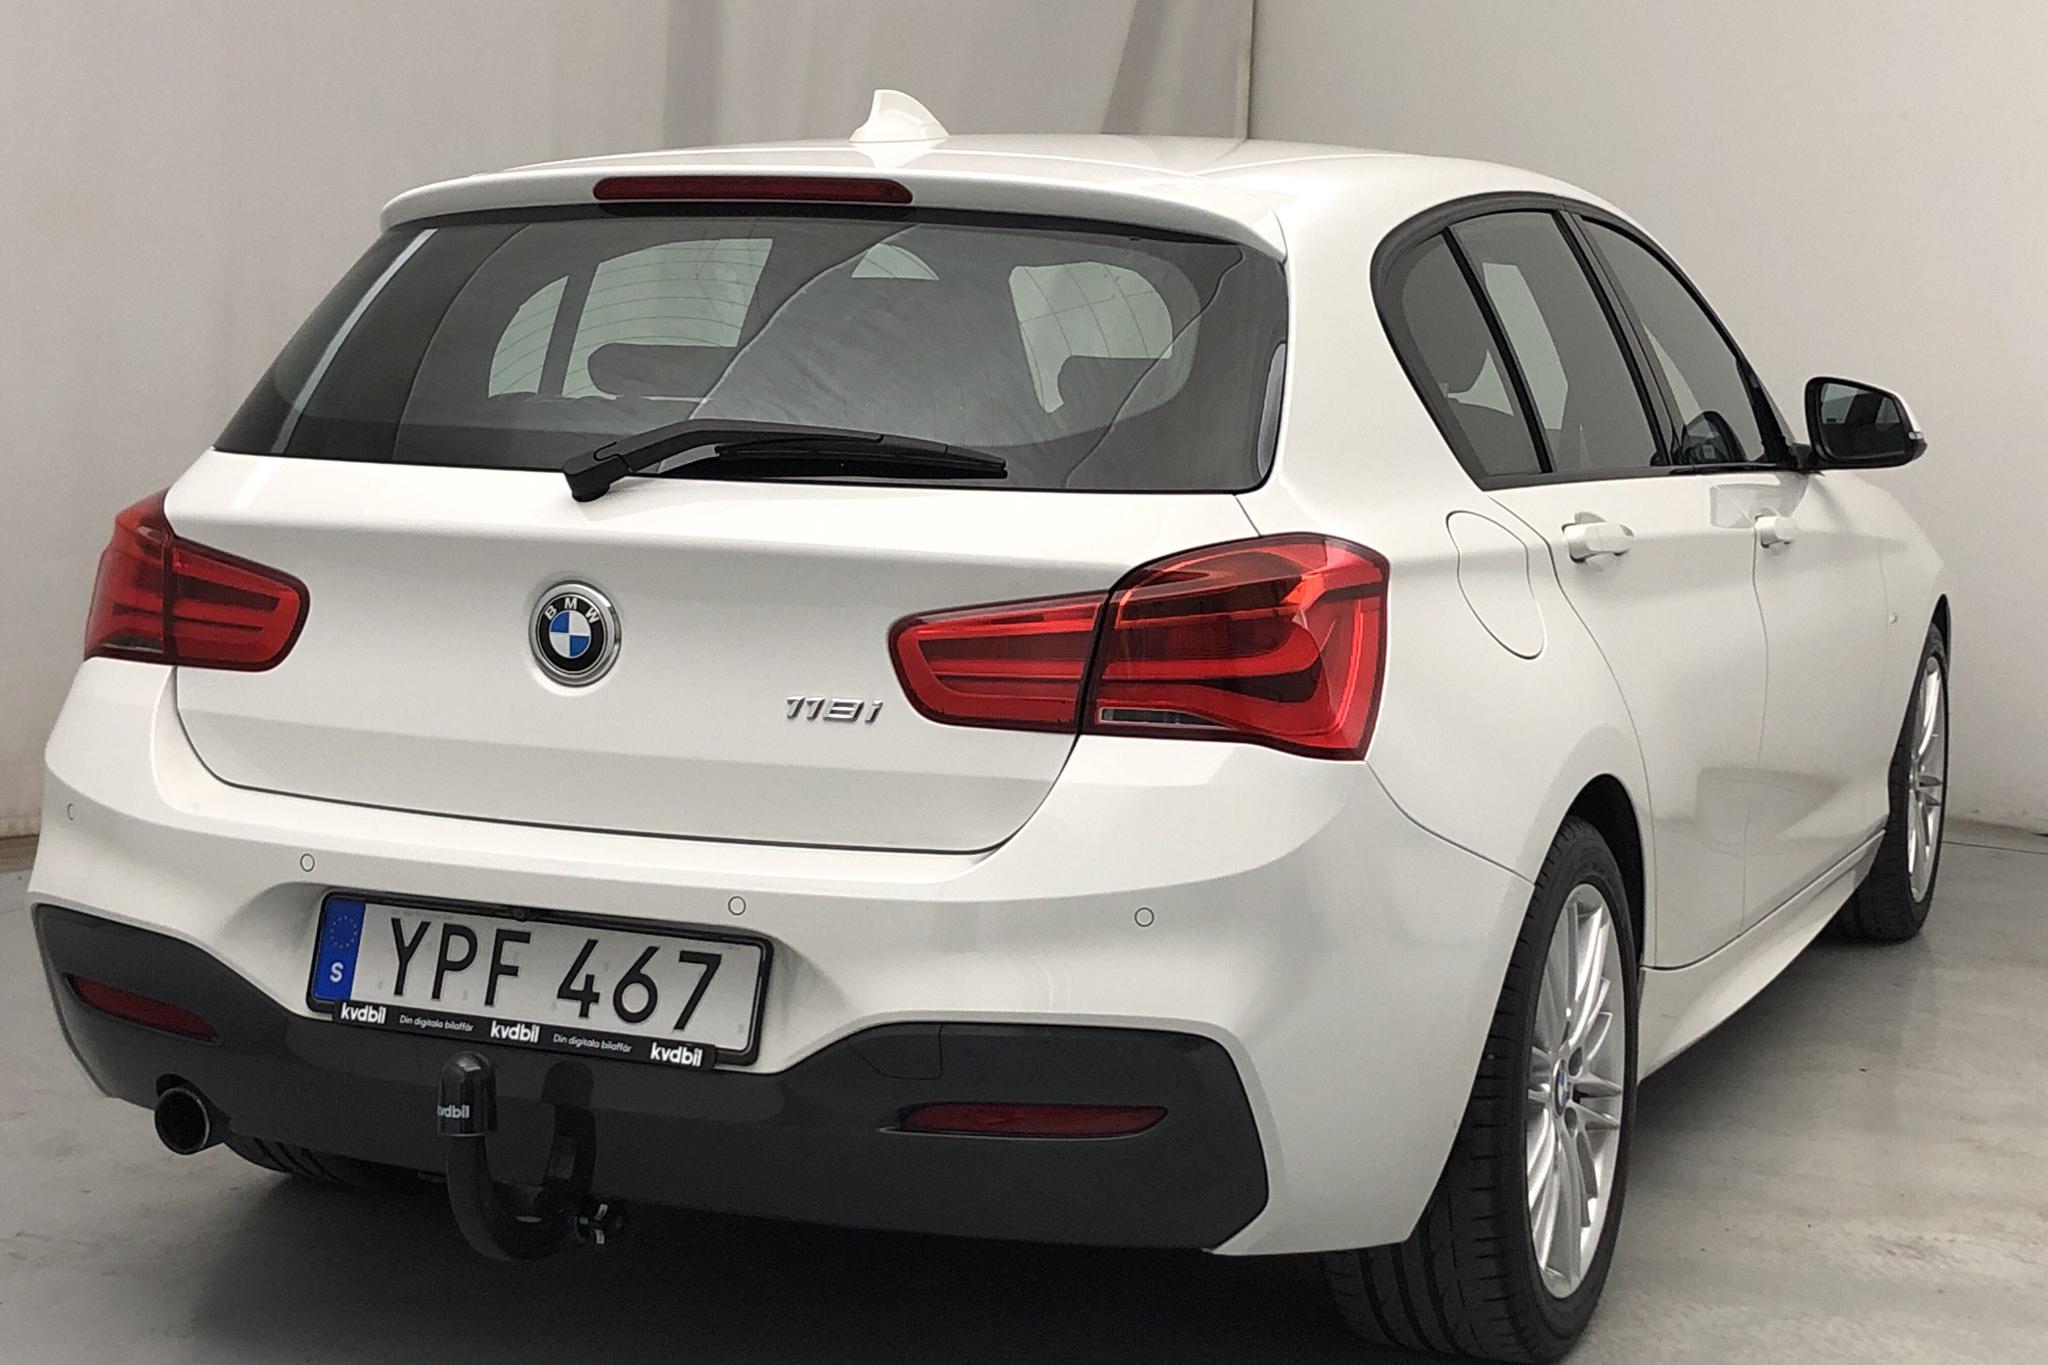 BMW 118i 5dr, F20 (136hk) - 79 370 km - Automatic - white - 2018